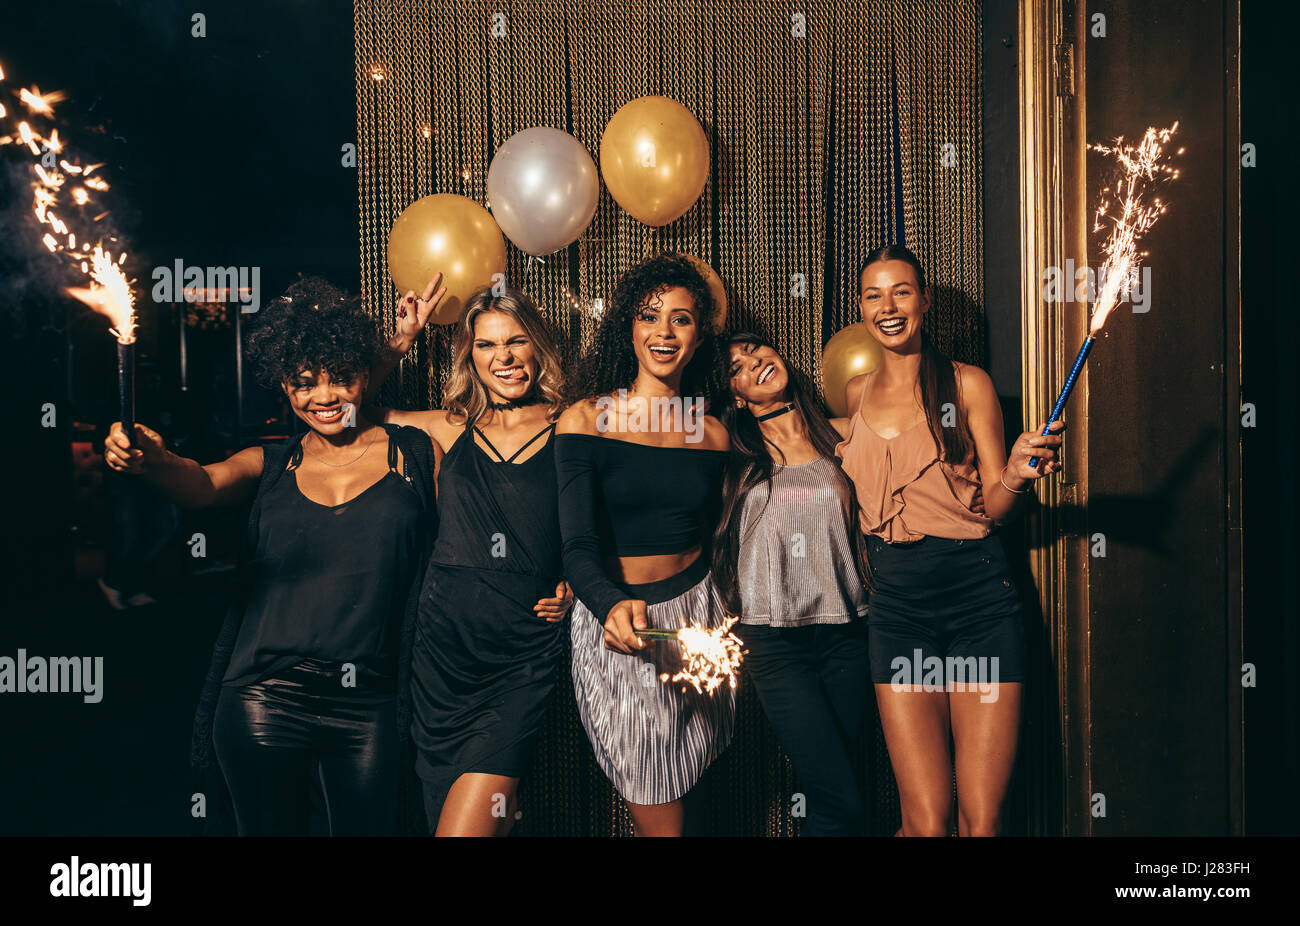 Foto de grupo de chicas celebrando la nochevieja en la discoteca. Grupo de amigas de fiesta en el pub con estrellitas. Foto de stock